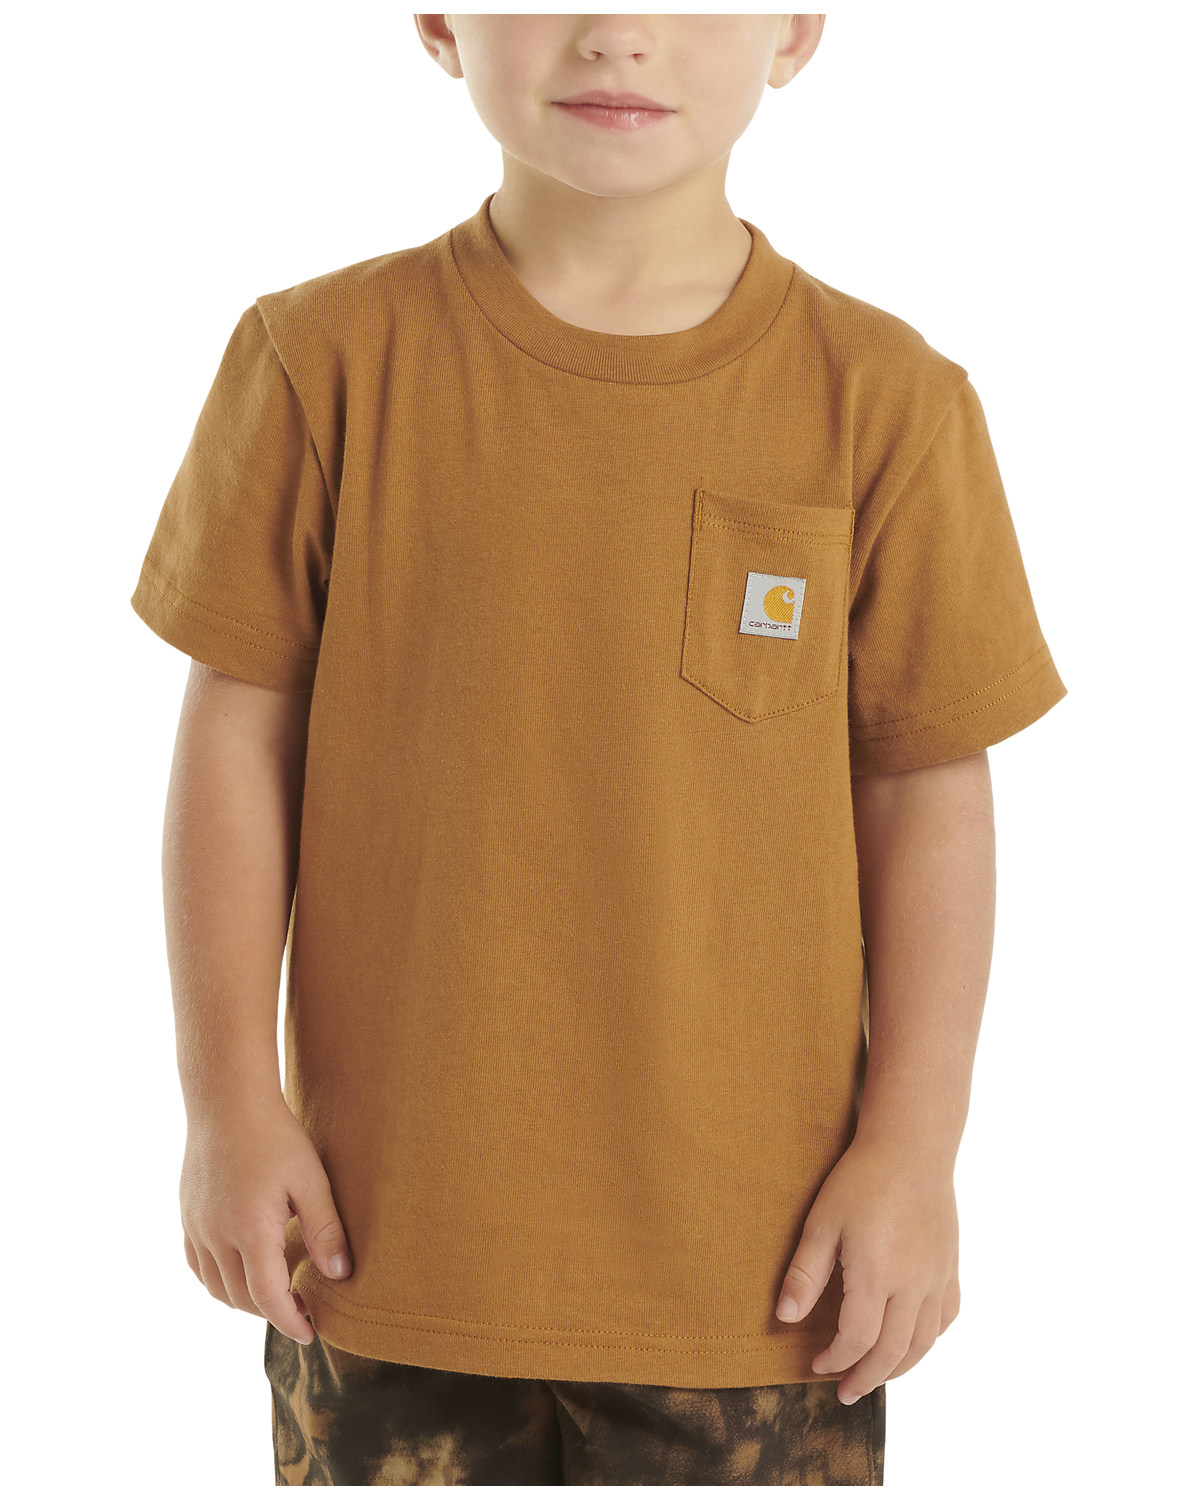 Carhartt Toddler Boys' Solid Short Sleeve Pocket T-Shirt